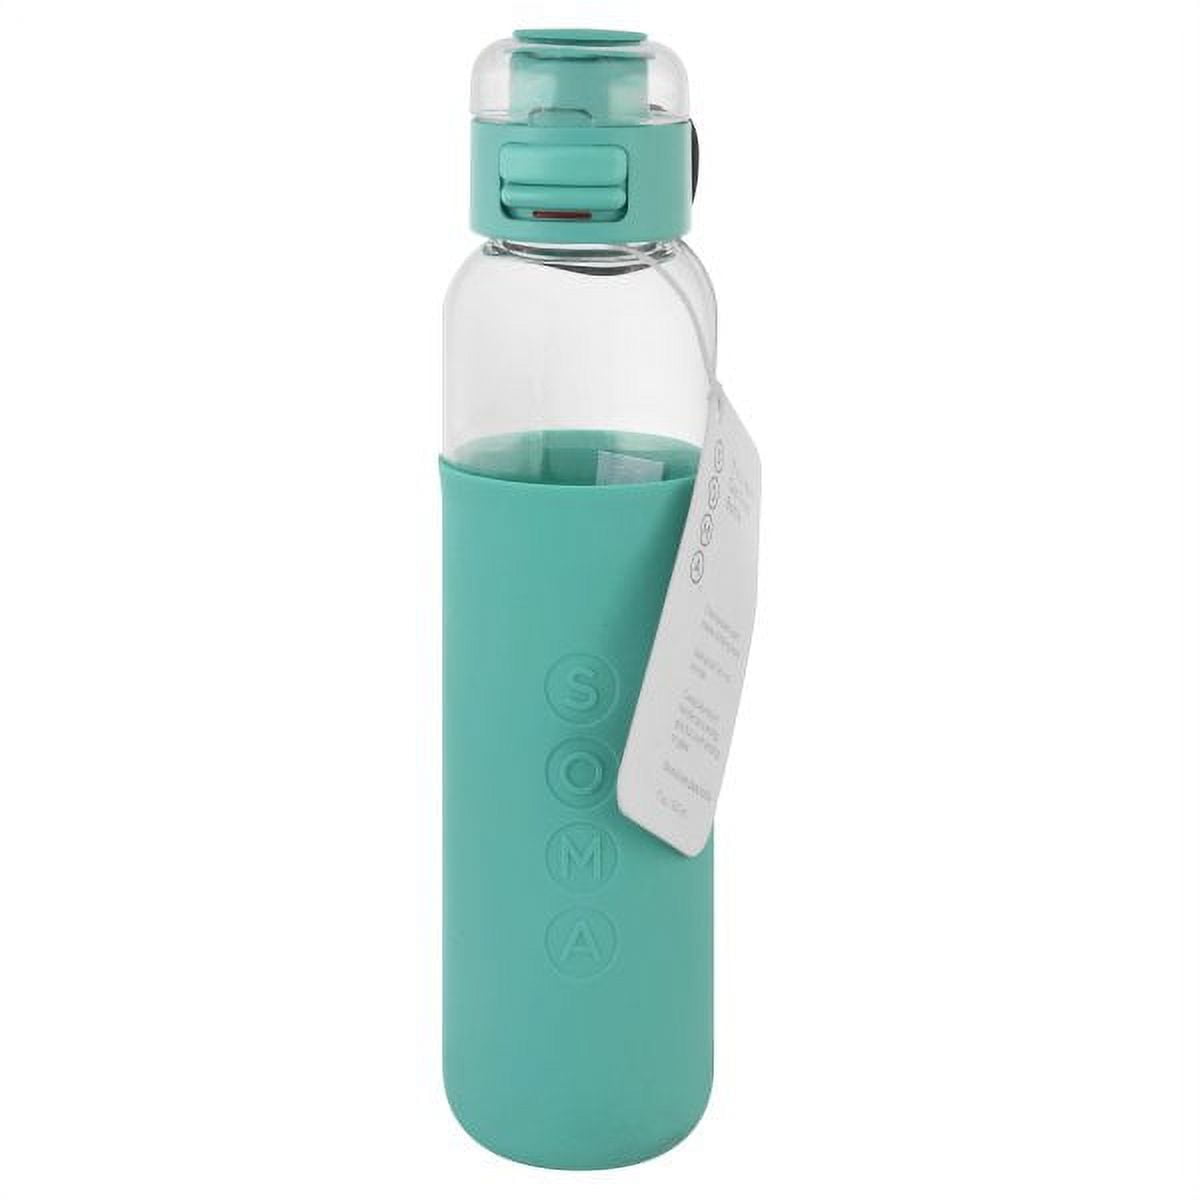 Iris Ohyama water bottle water bottle fulme mug bottle with slim handle  khaki FM-SL500// Steel 